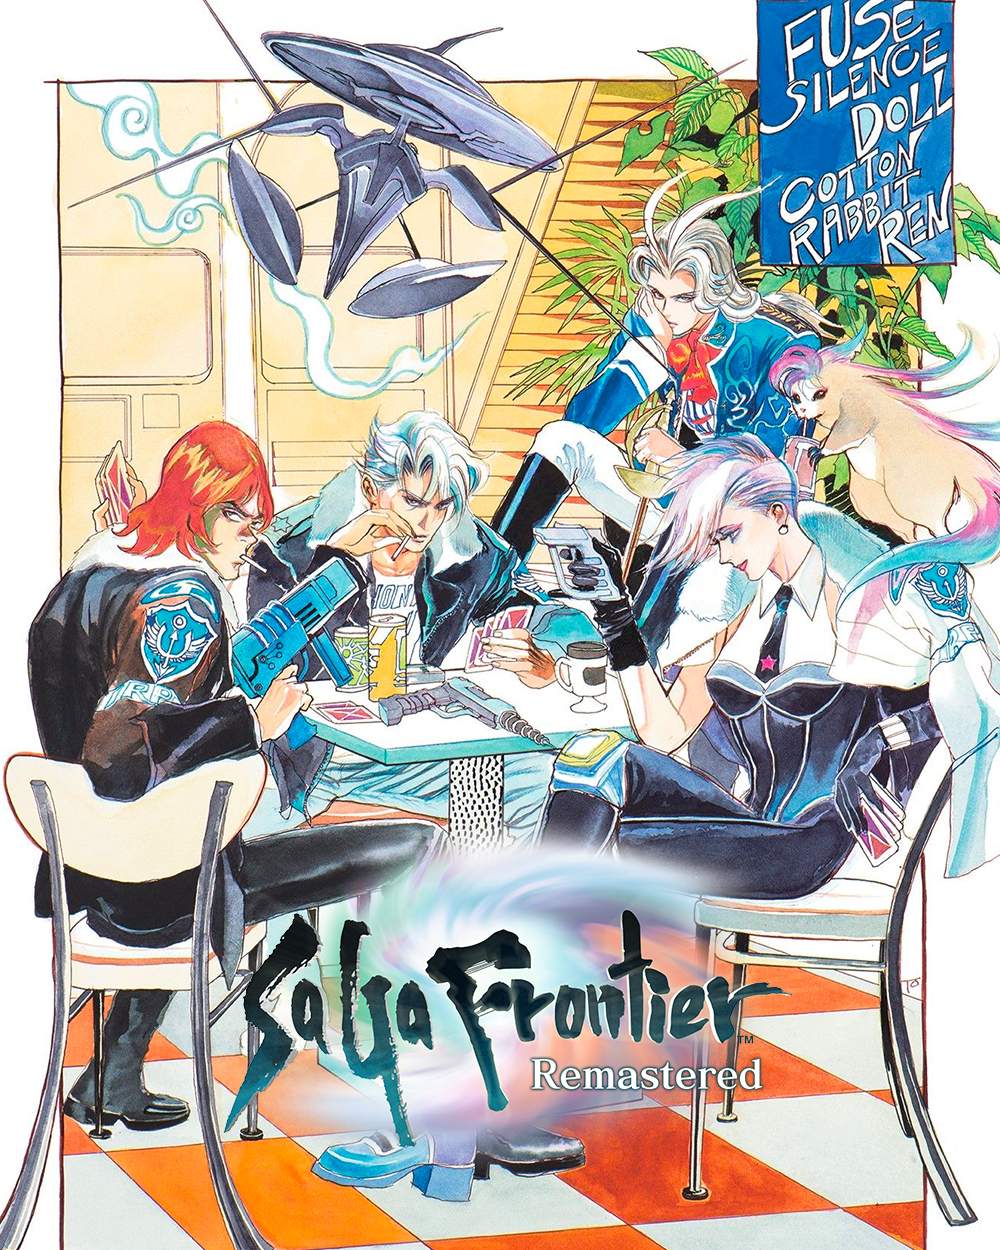 SaGa Frontier Remastered ist jetzt erhältlich!